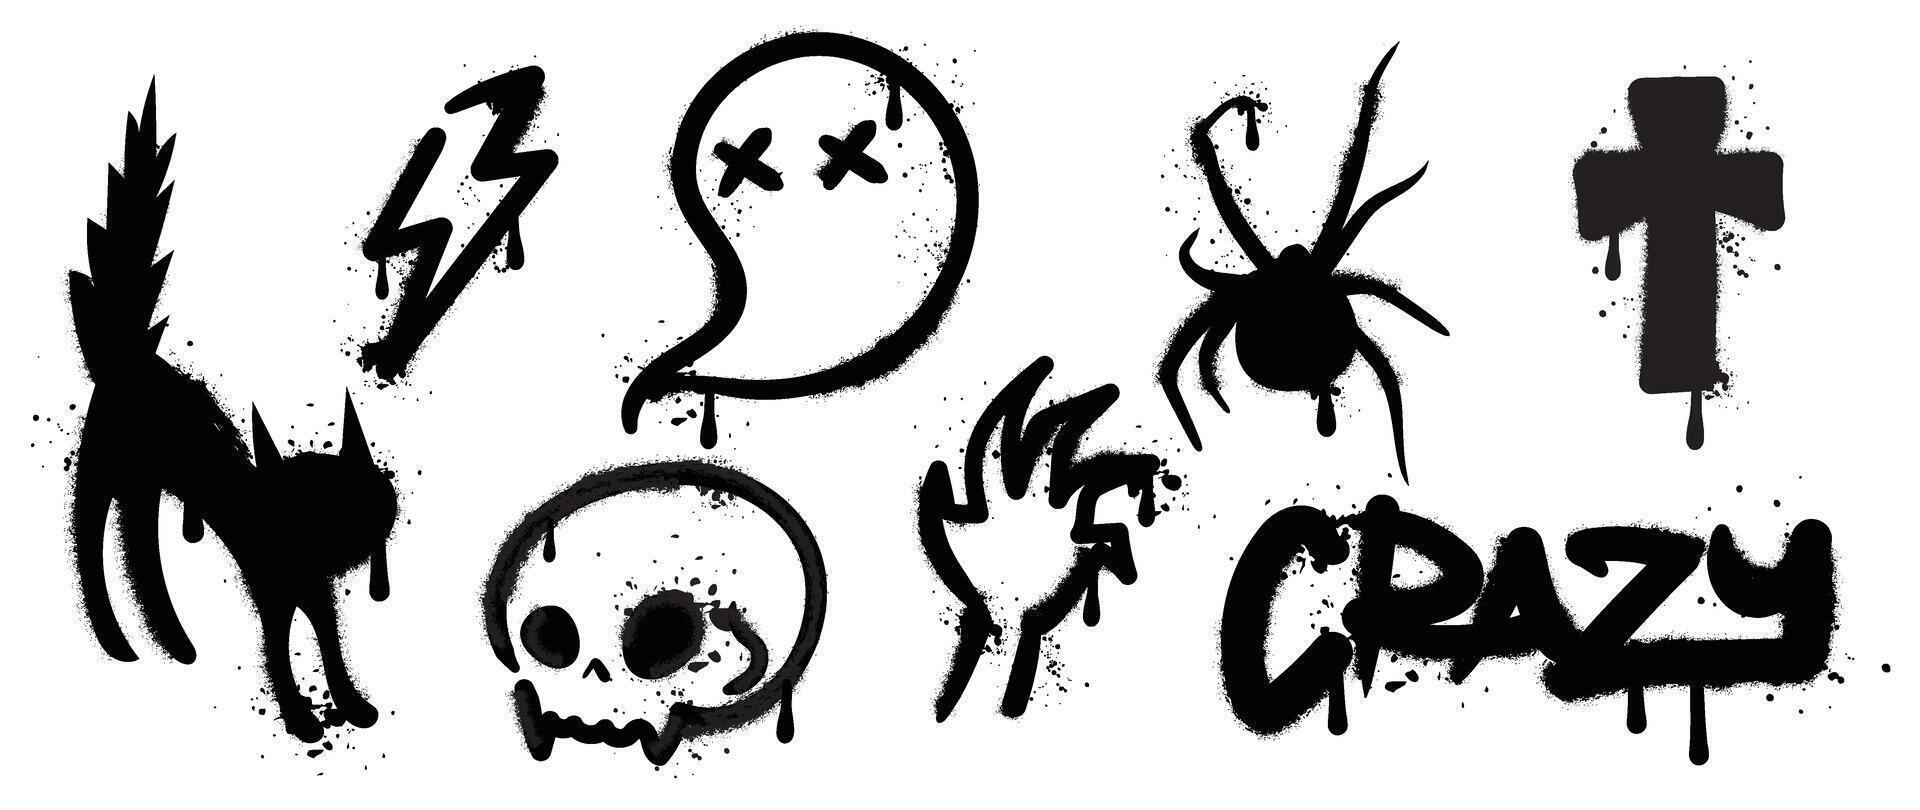 conjunto do Preto grafite spray elemento vetor. coleção dia das Bruxas do símbolo, crânio, gato, fantasma, aranha, raio com tinta gotejamento textura. Projeto ilustração para adesivo, decoração, rua arte. vetor